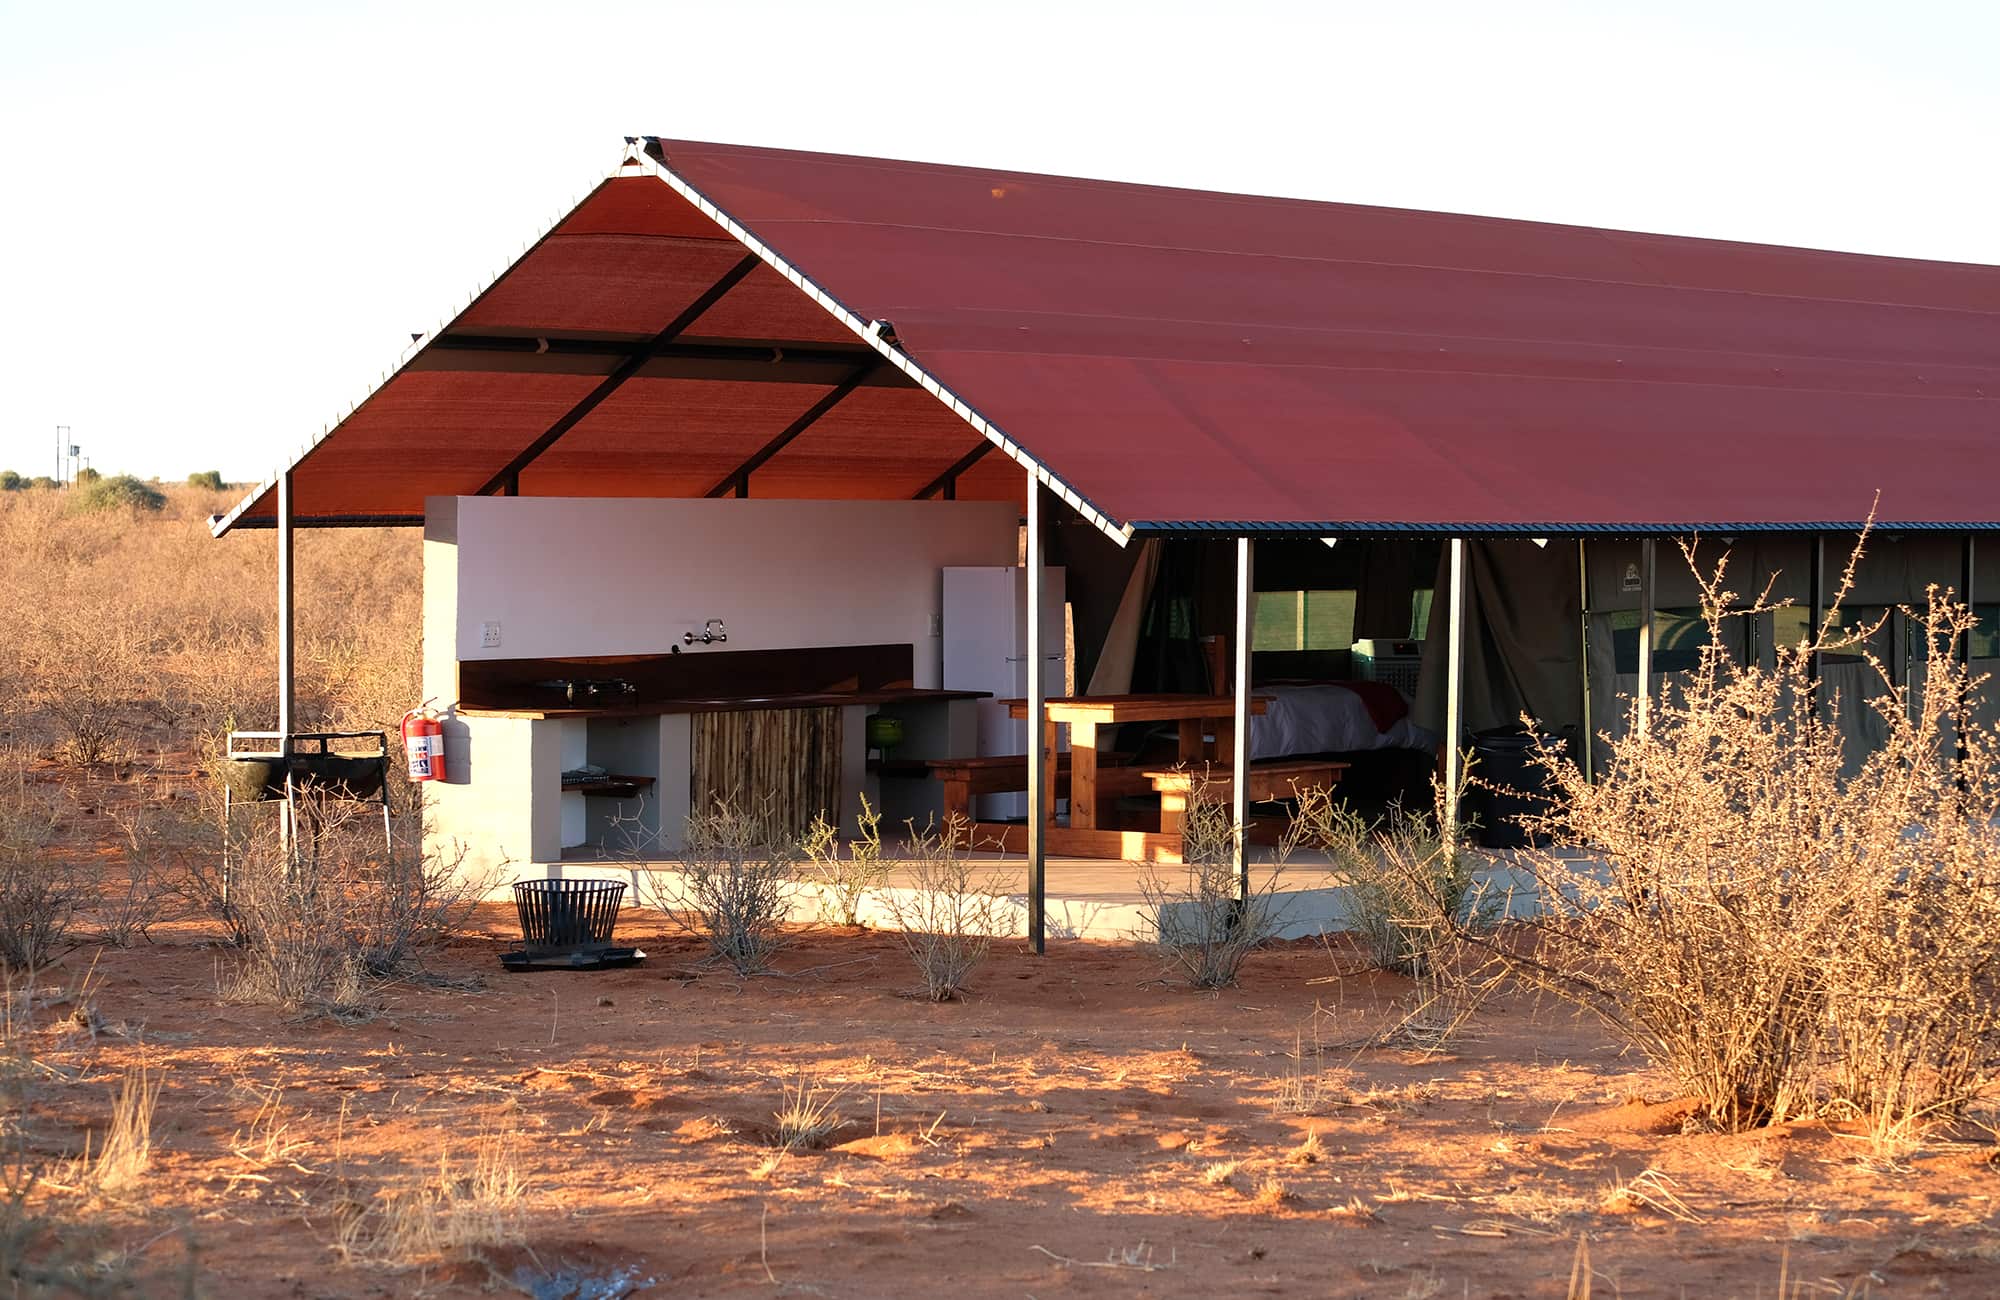 Kalahari Anib Camping2go